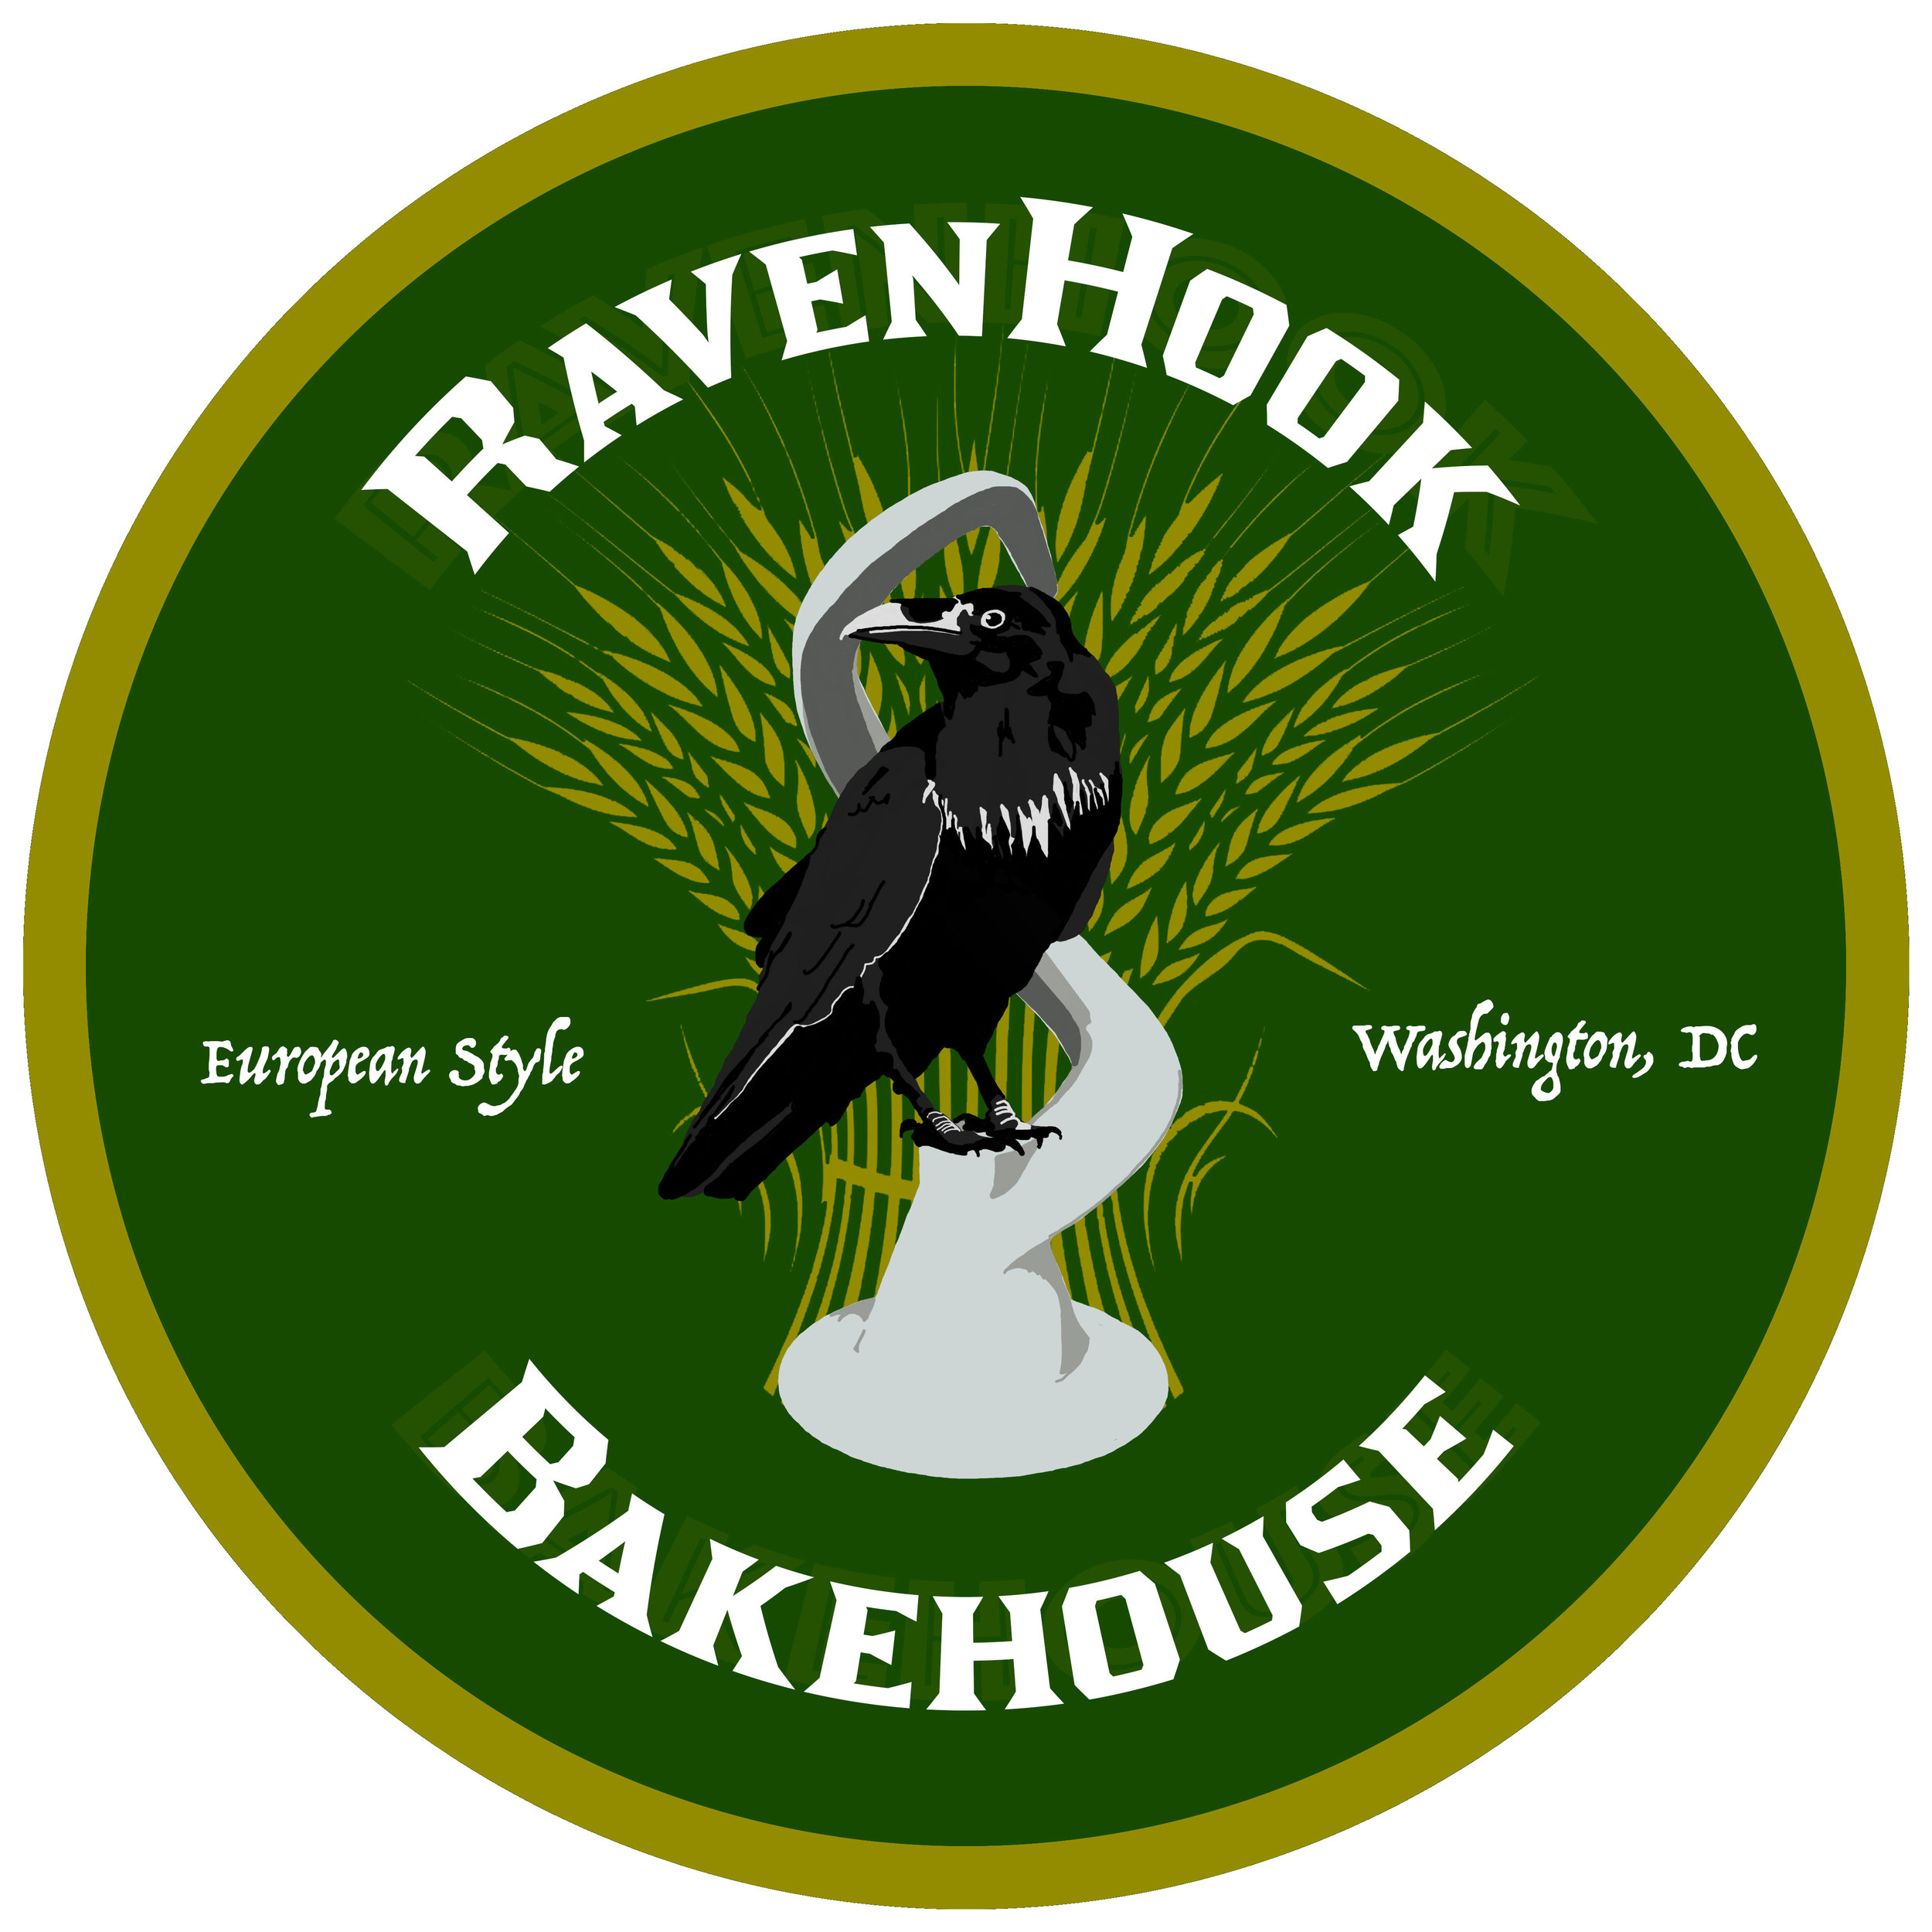 RavenHook Bakehouse